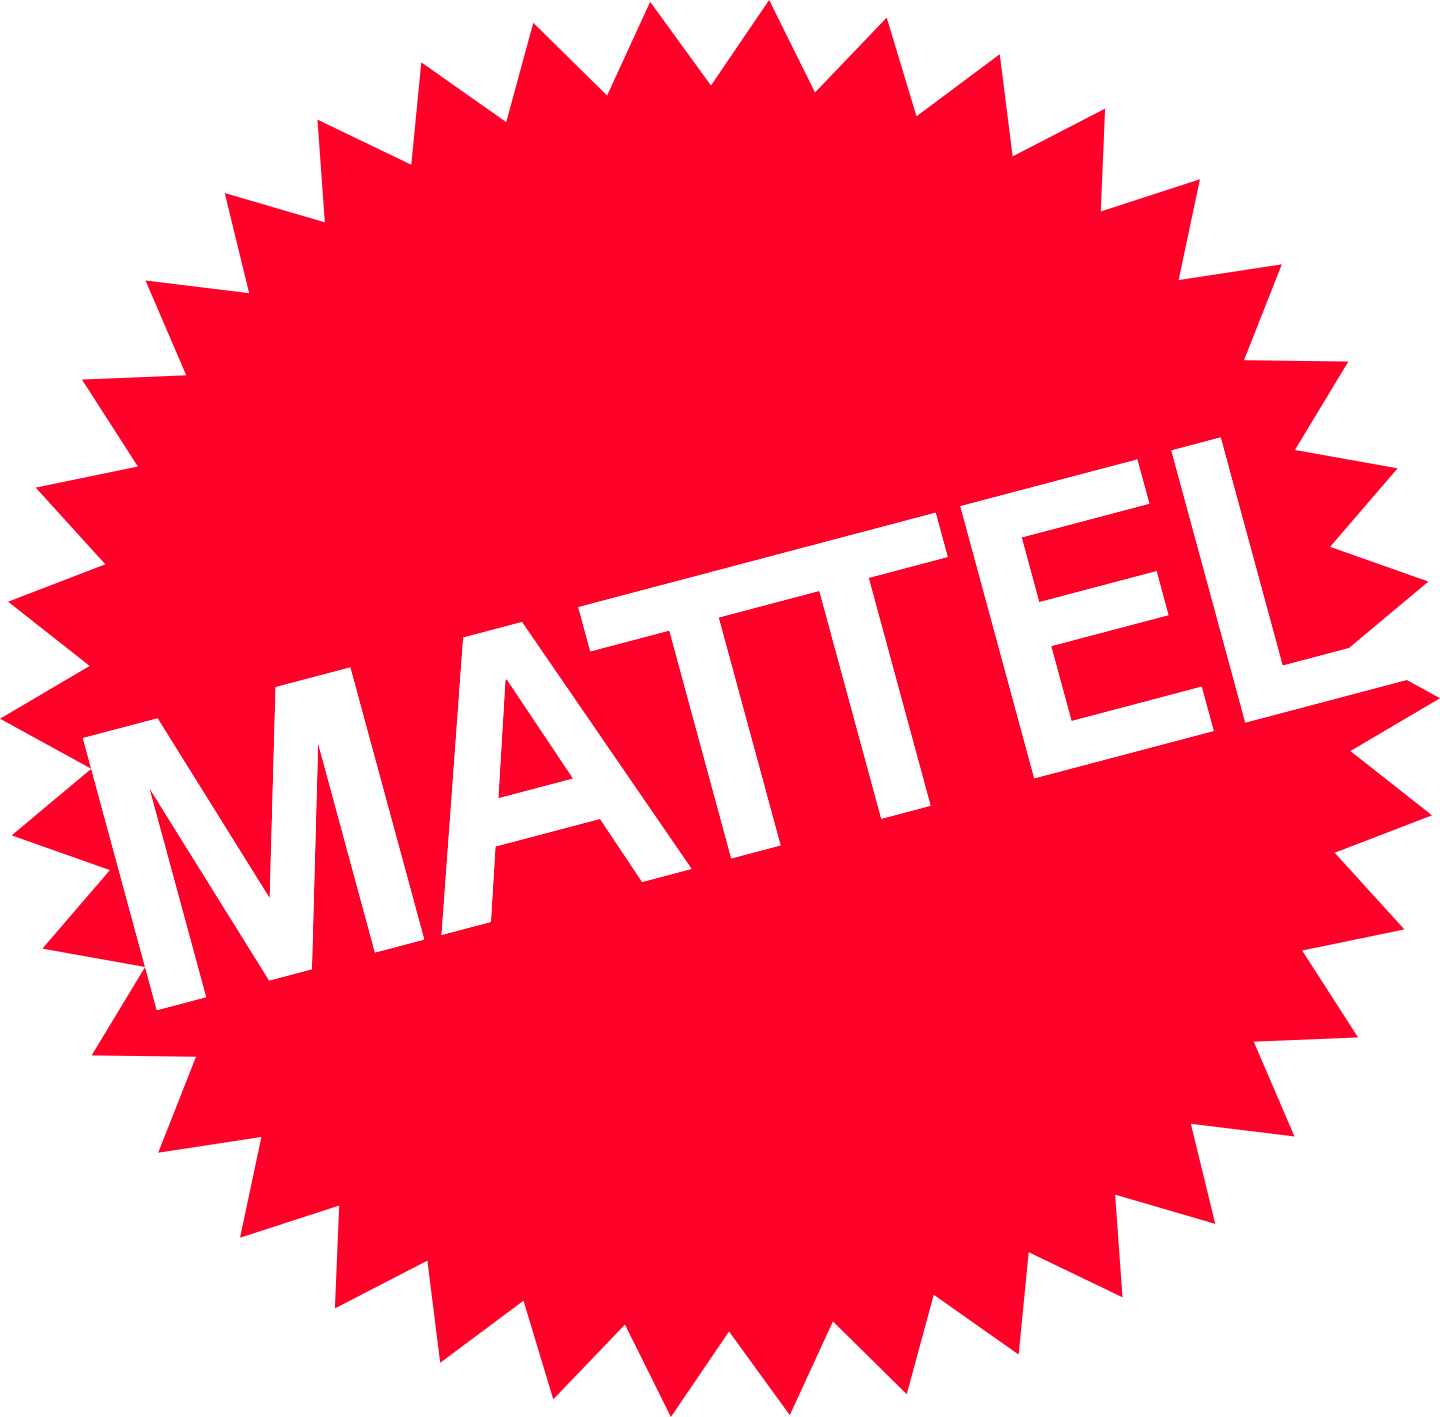 mattel logo 2 1 - Mattel Logo